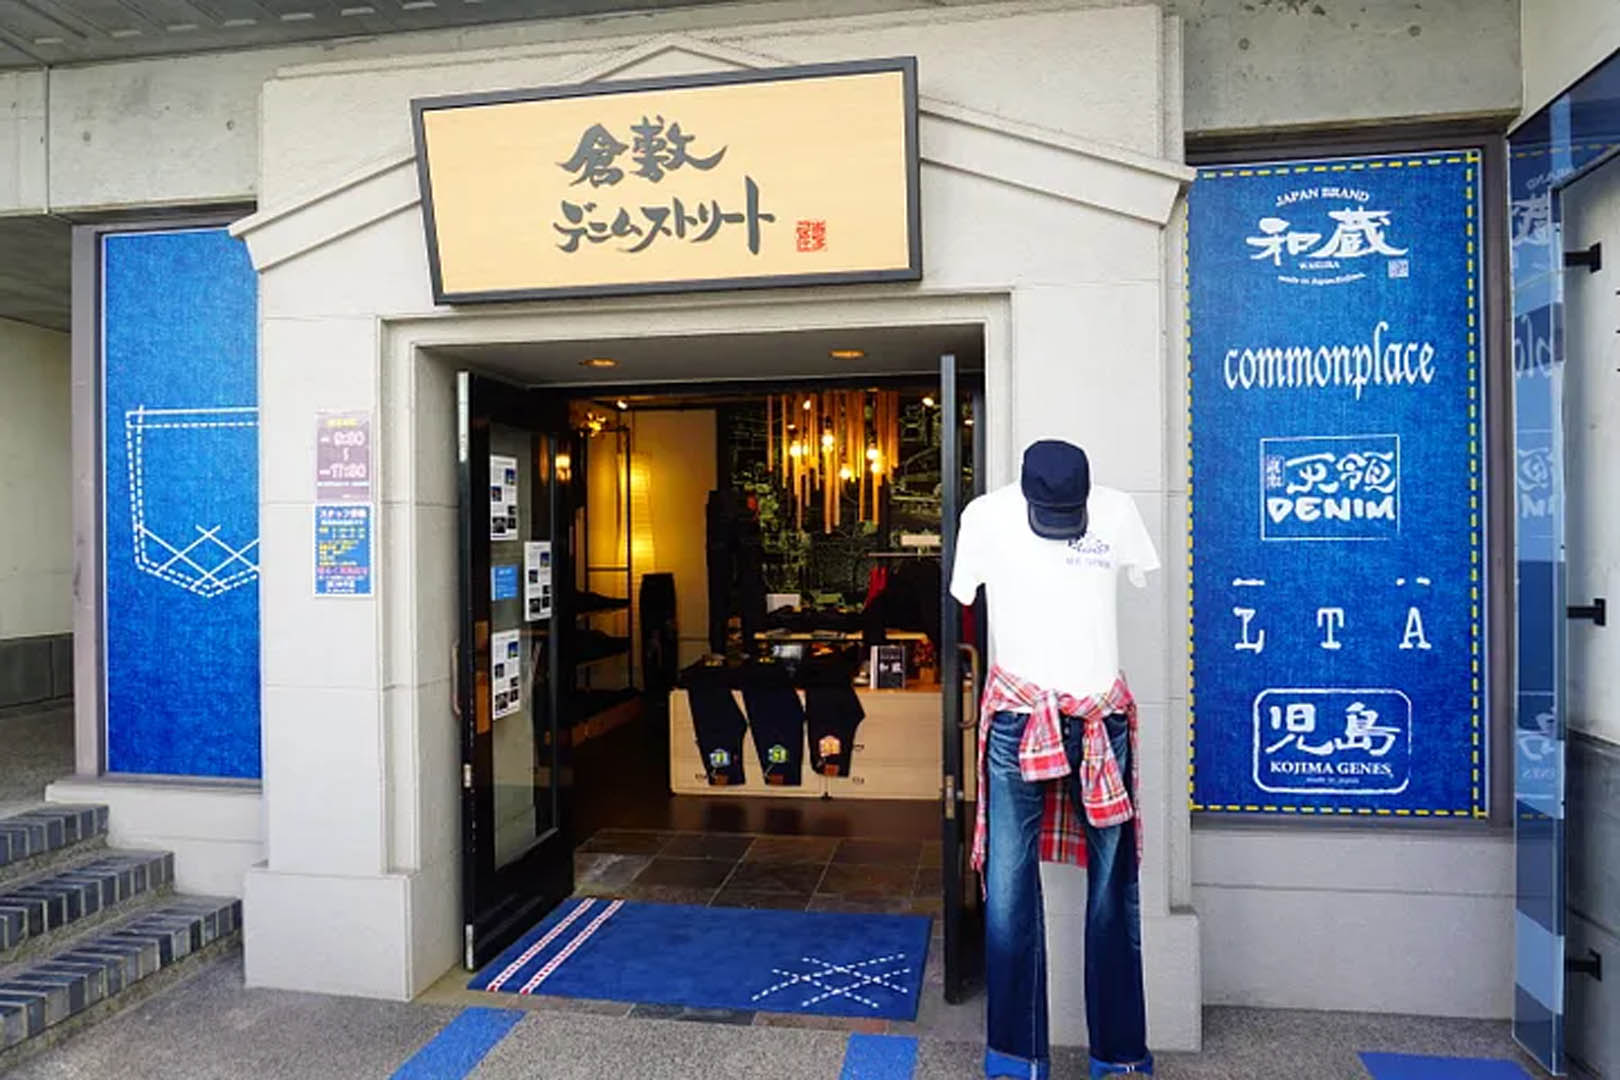 距離倉敷不遠的兒島是日本牛仔褲勝地，當然也要來這邊開個店吸引觀光客